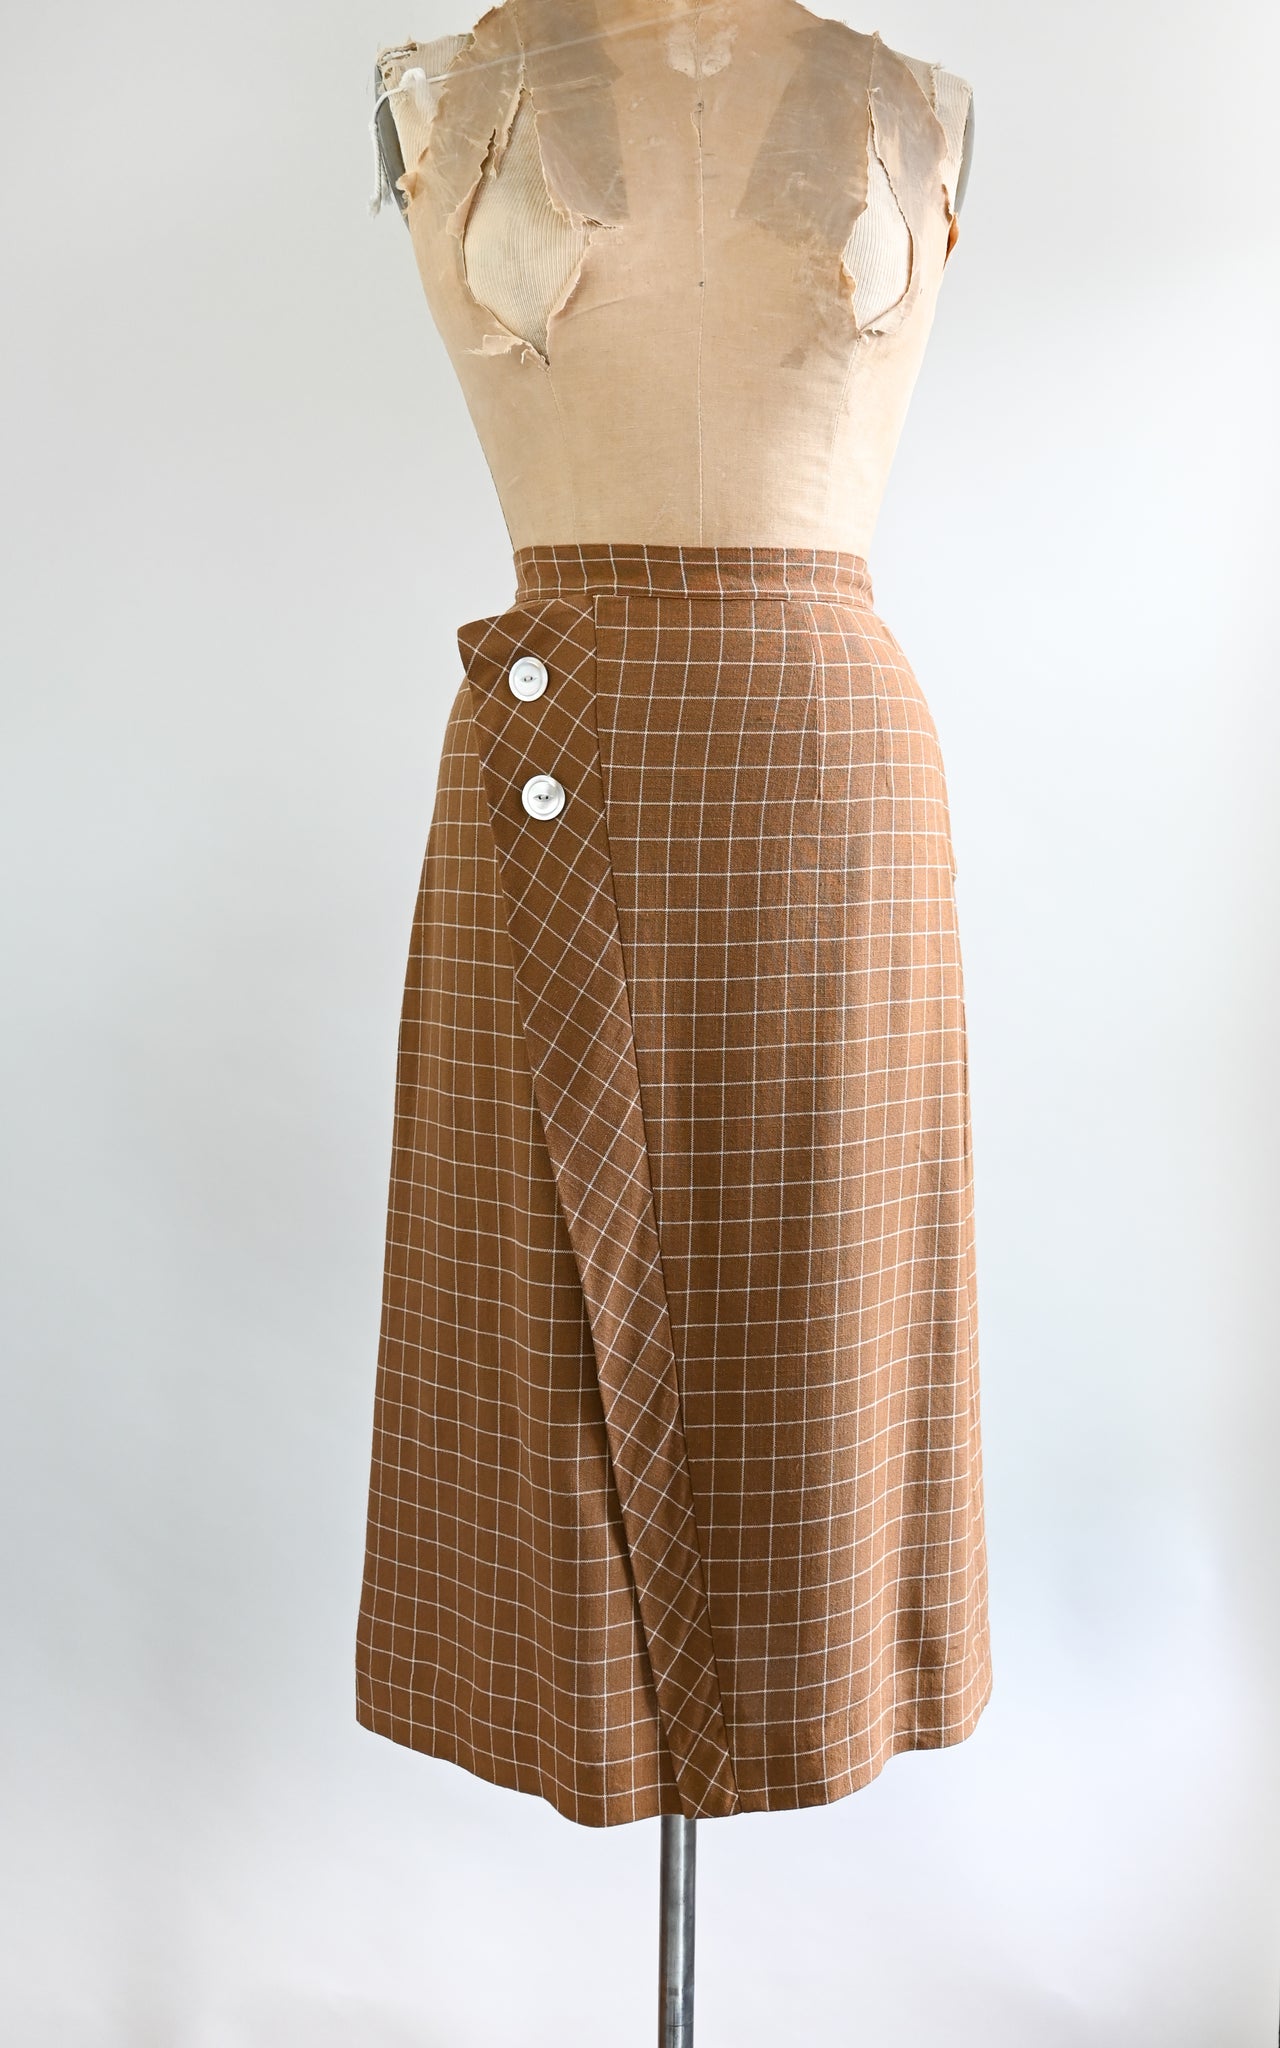 1940s Noisette Skirt